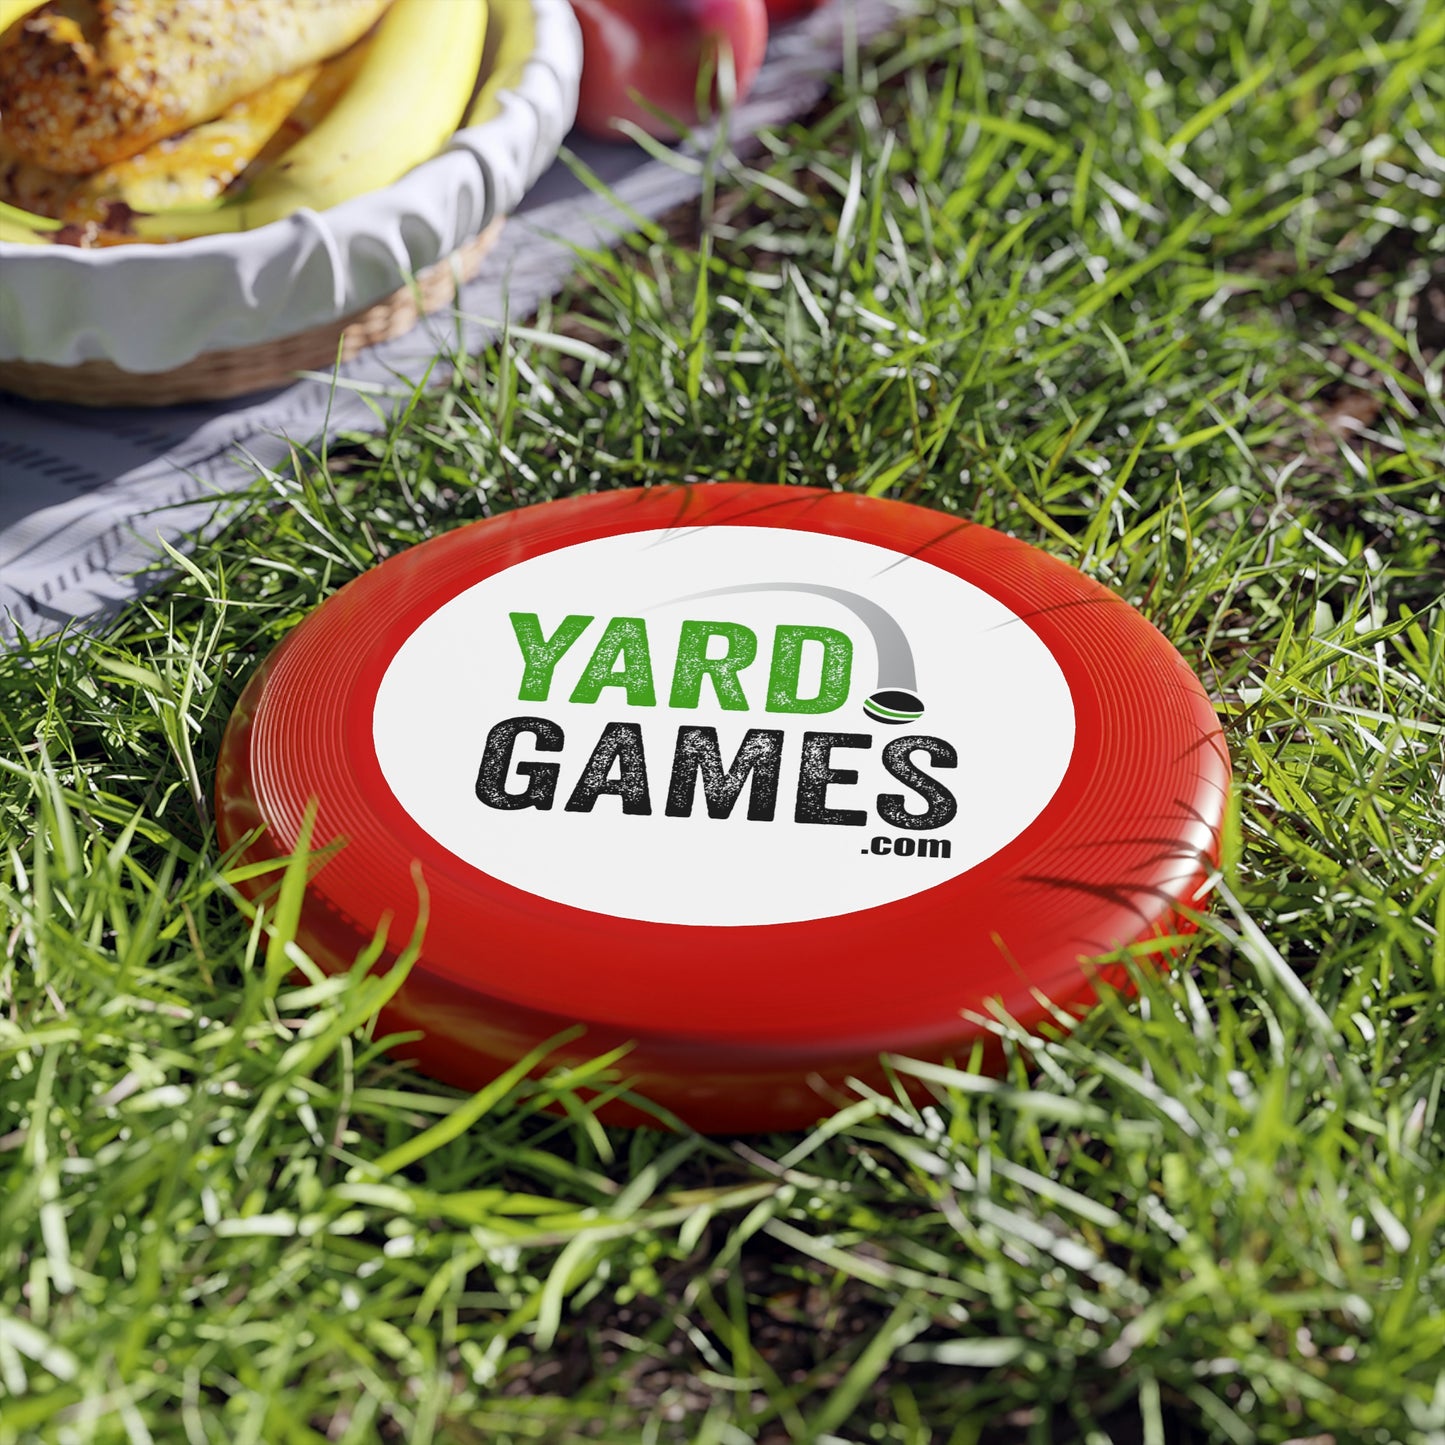 YardGames.com Wham-O Frisbee